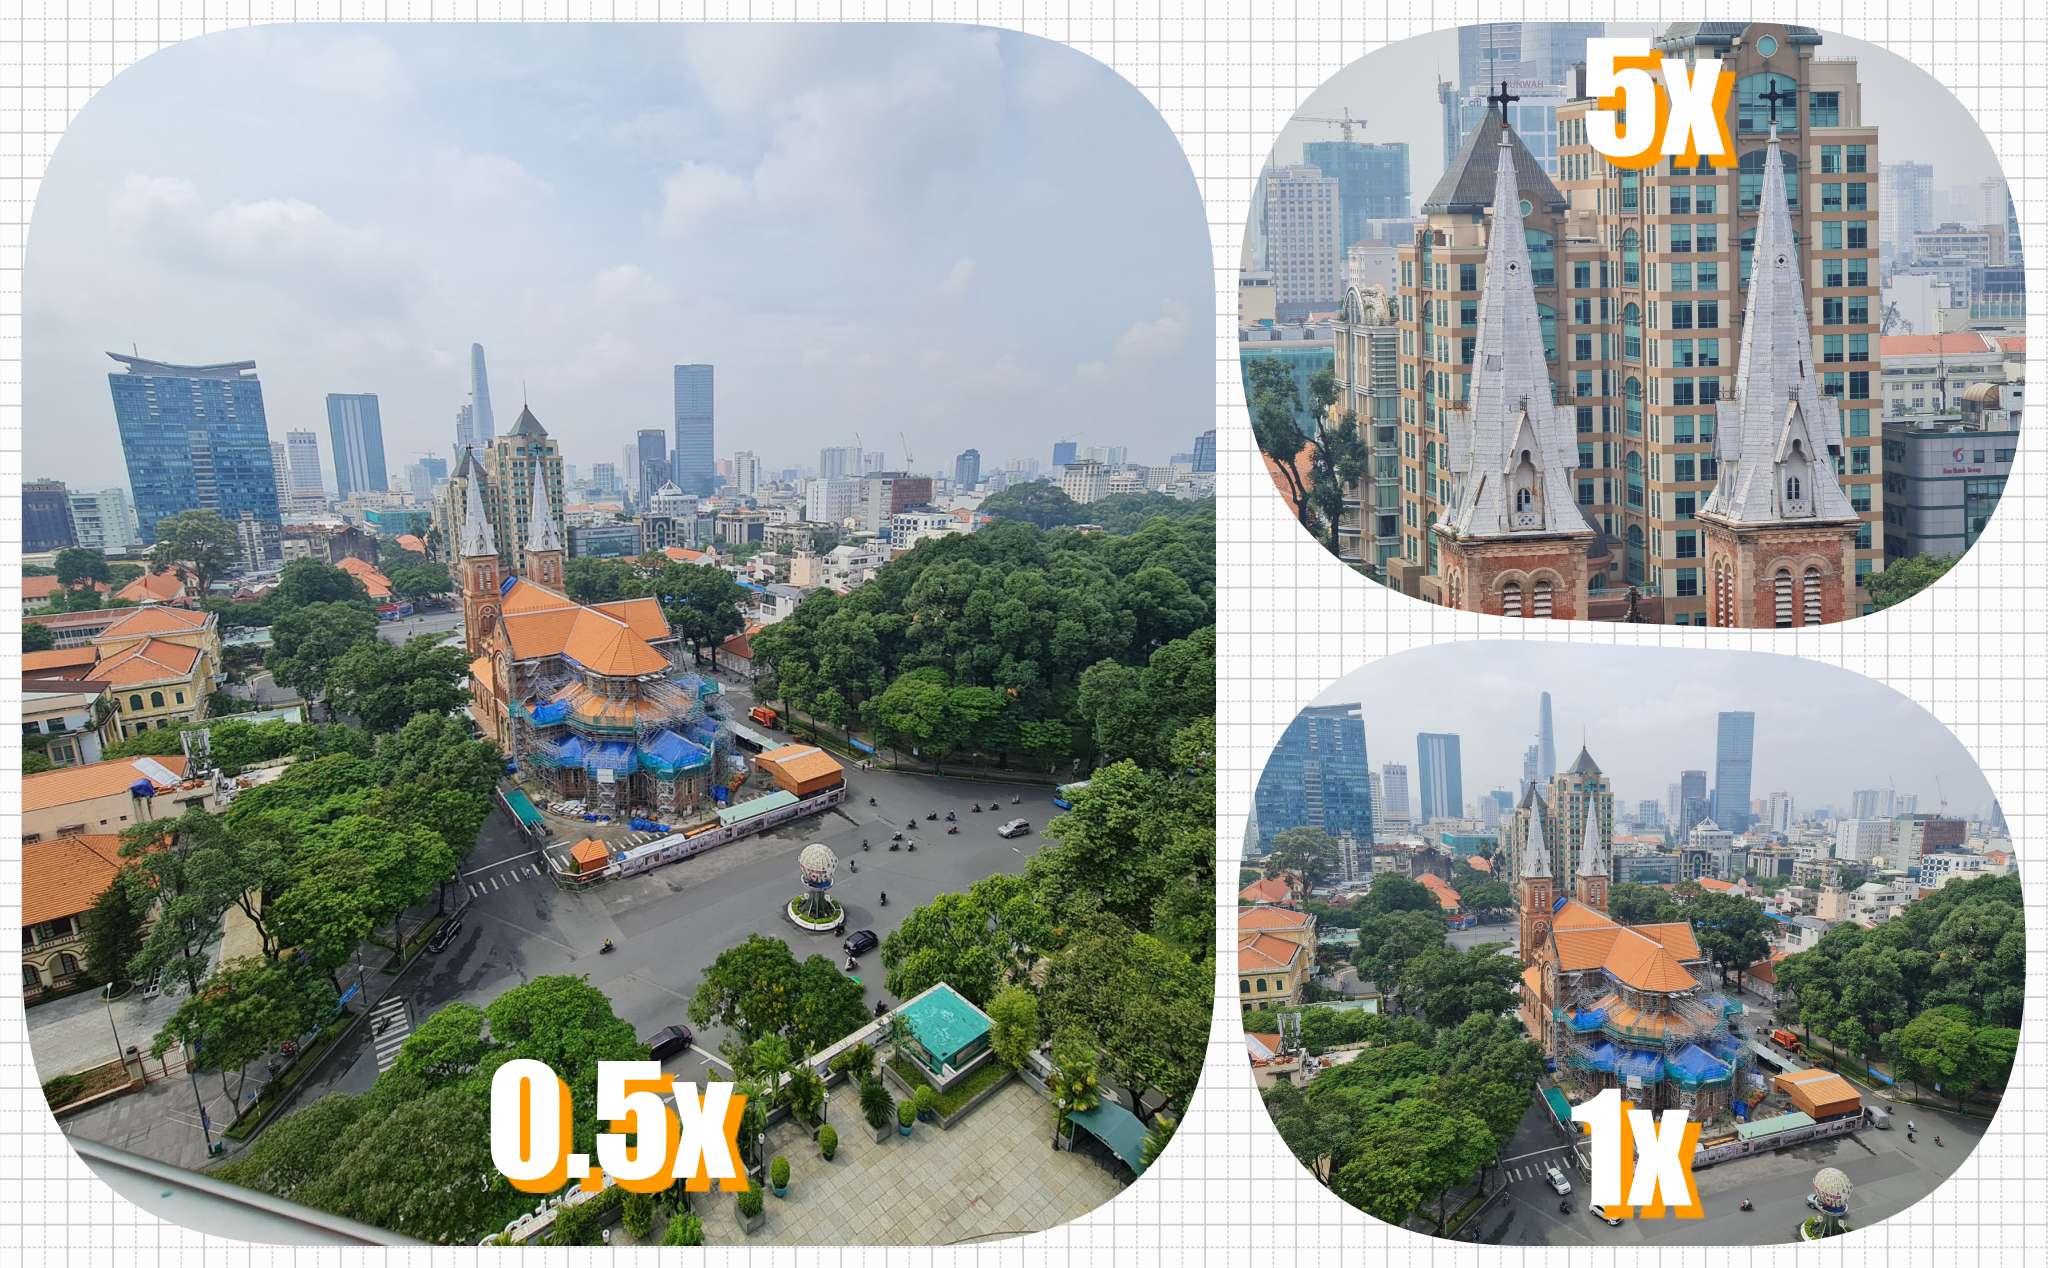 [Hình ảnh] Chụp vội buổi sáng Sài Gòn với Galaxy Note 20 Ultra 5G